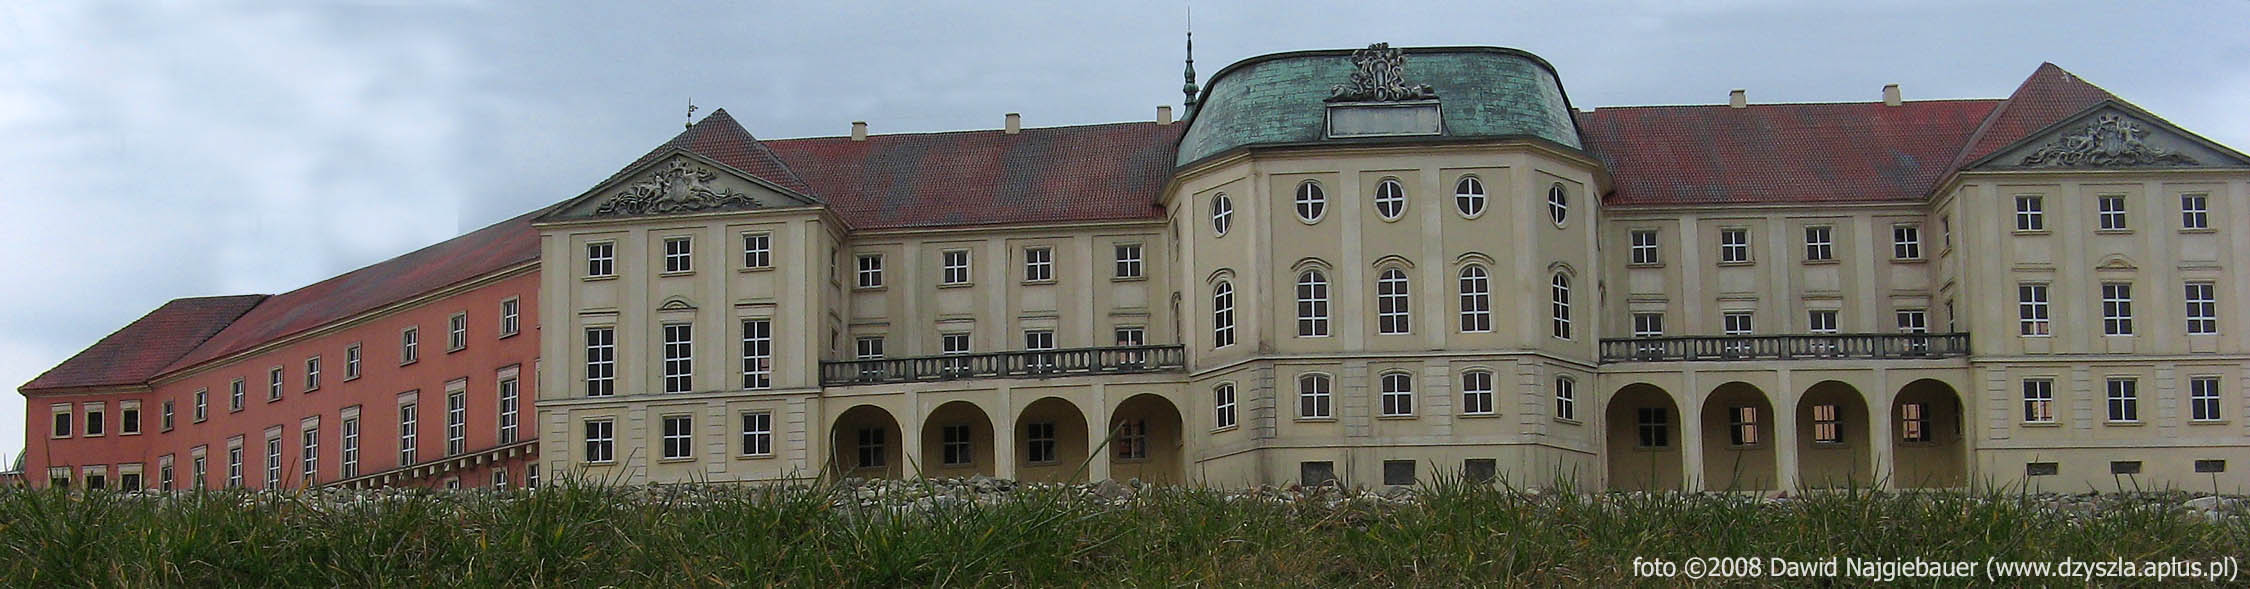 Zamek Królewski w Warszawie - od strony ogrodów